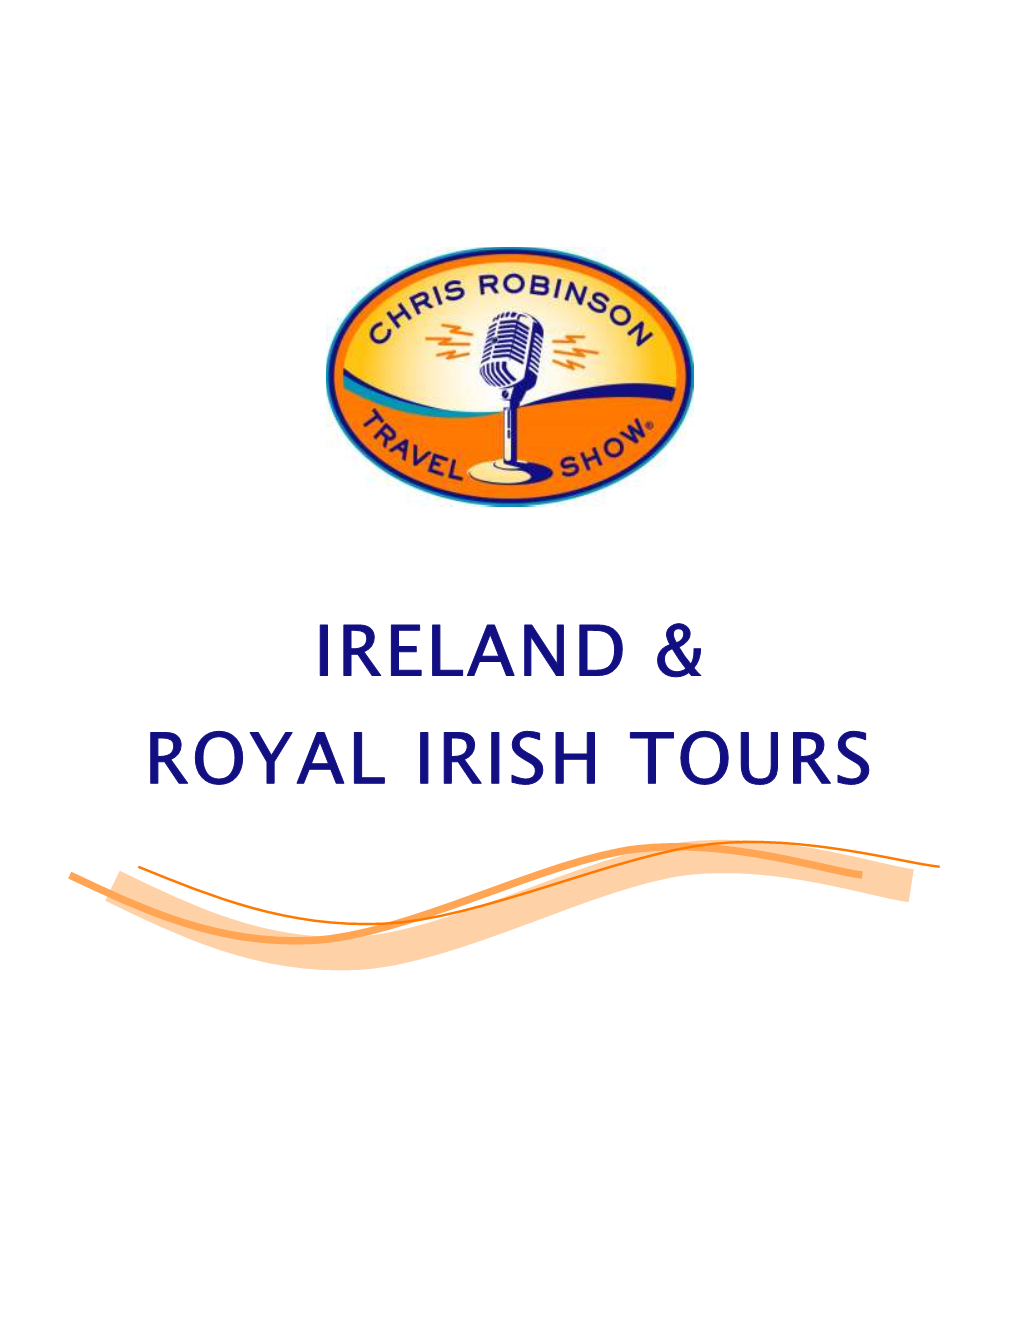 Ireland & Royal Irish Tours